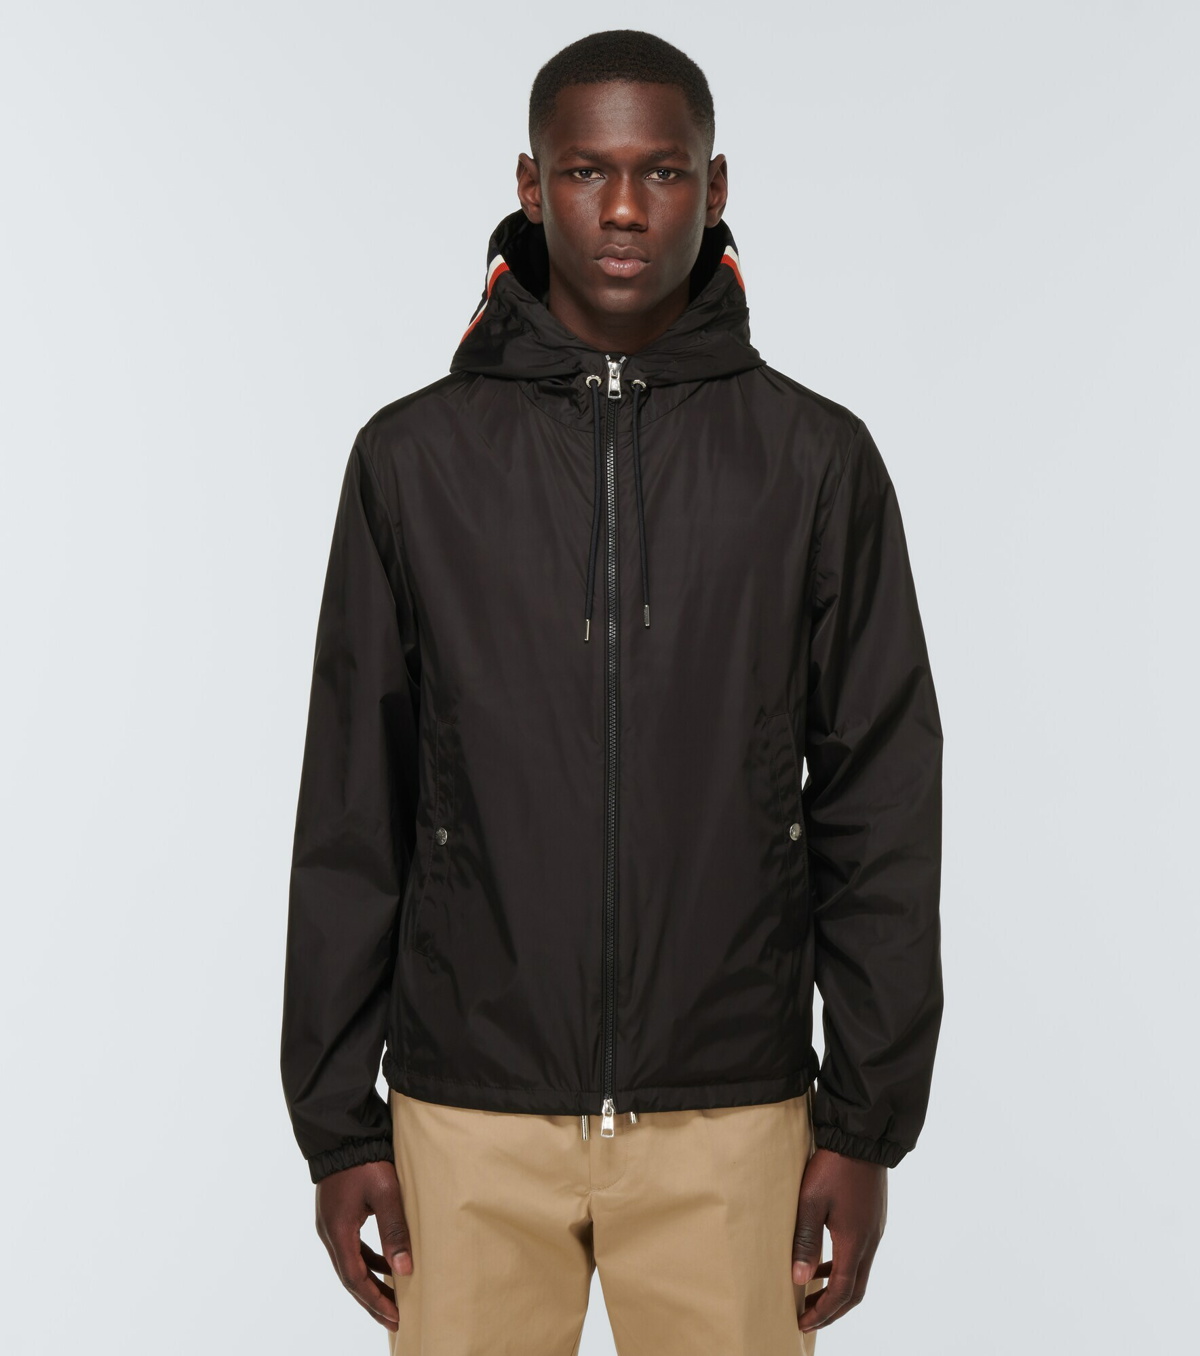 Moncler - Grimpeurs hooded jacket Moncler